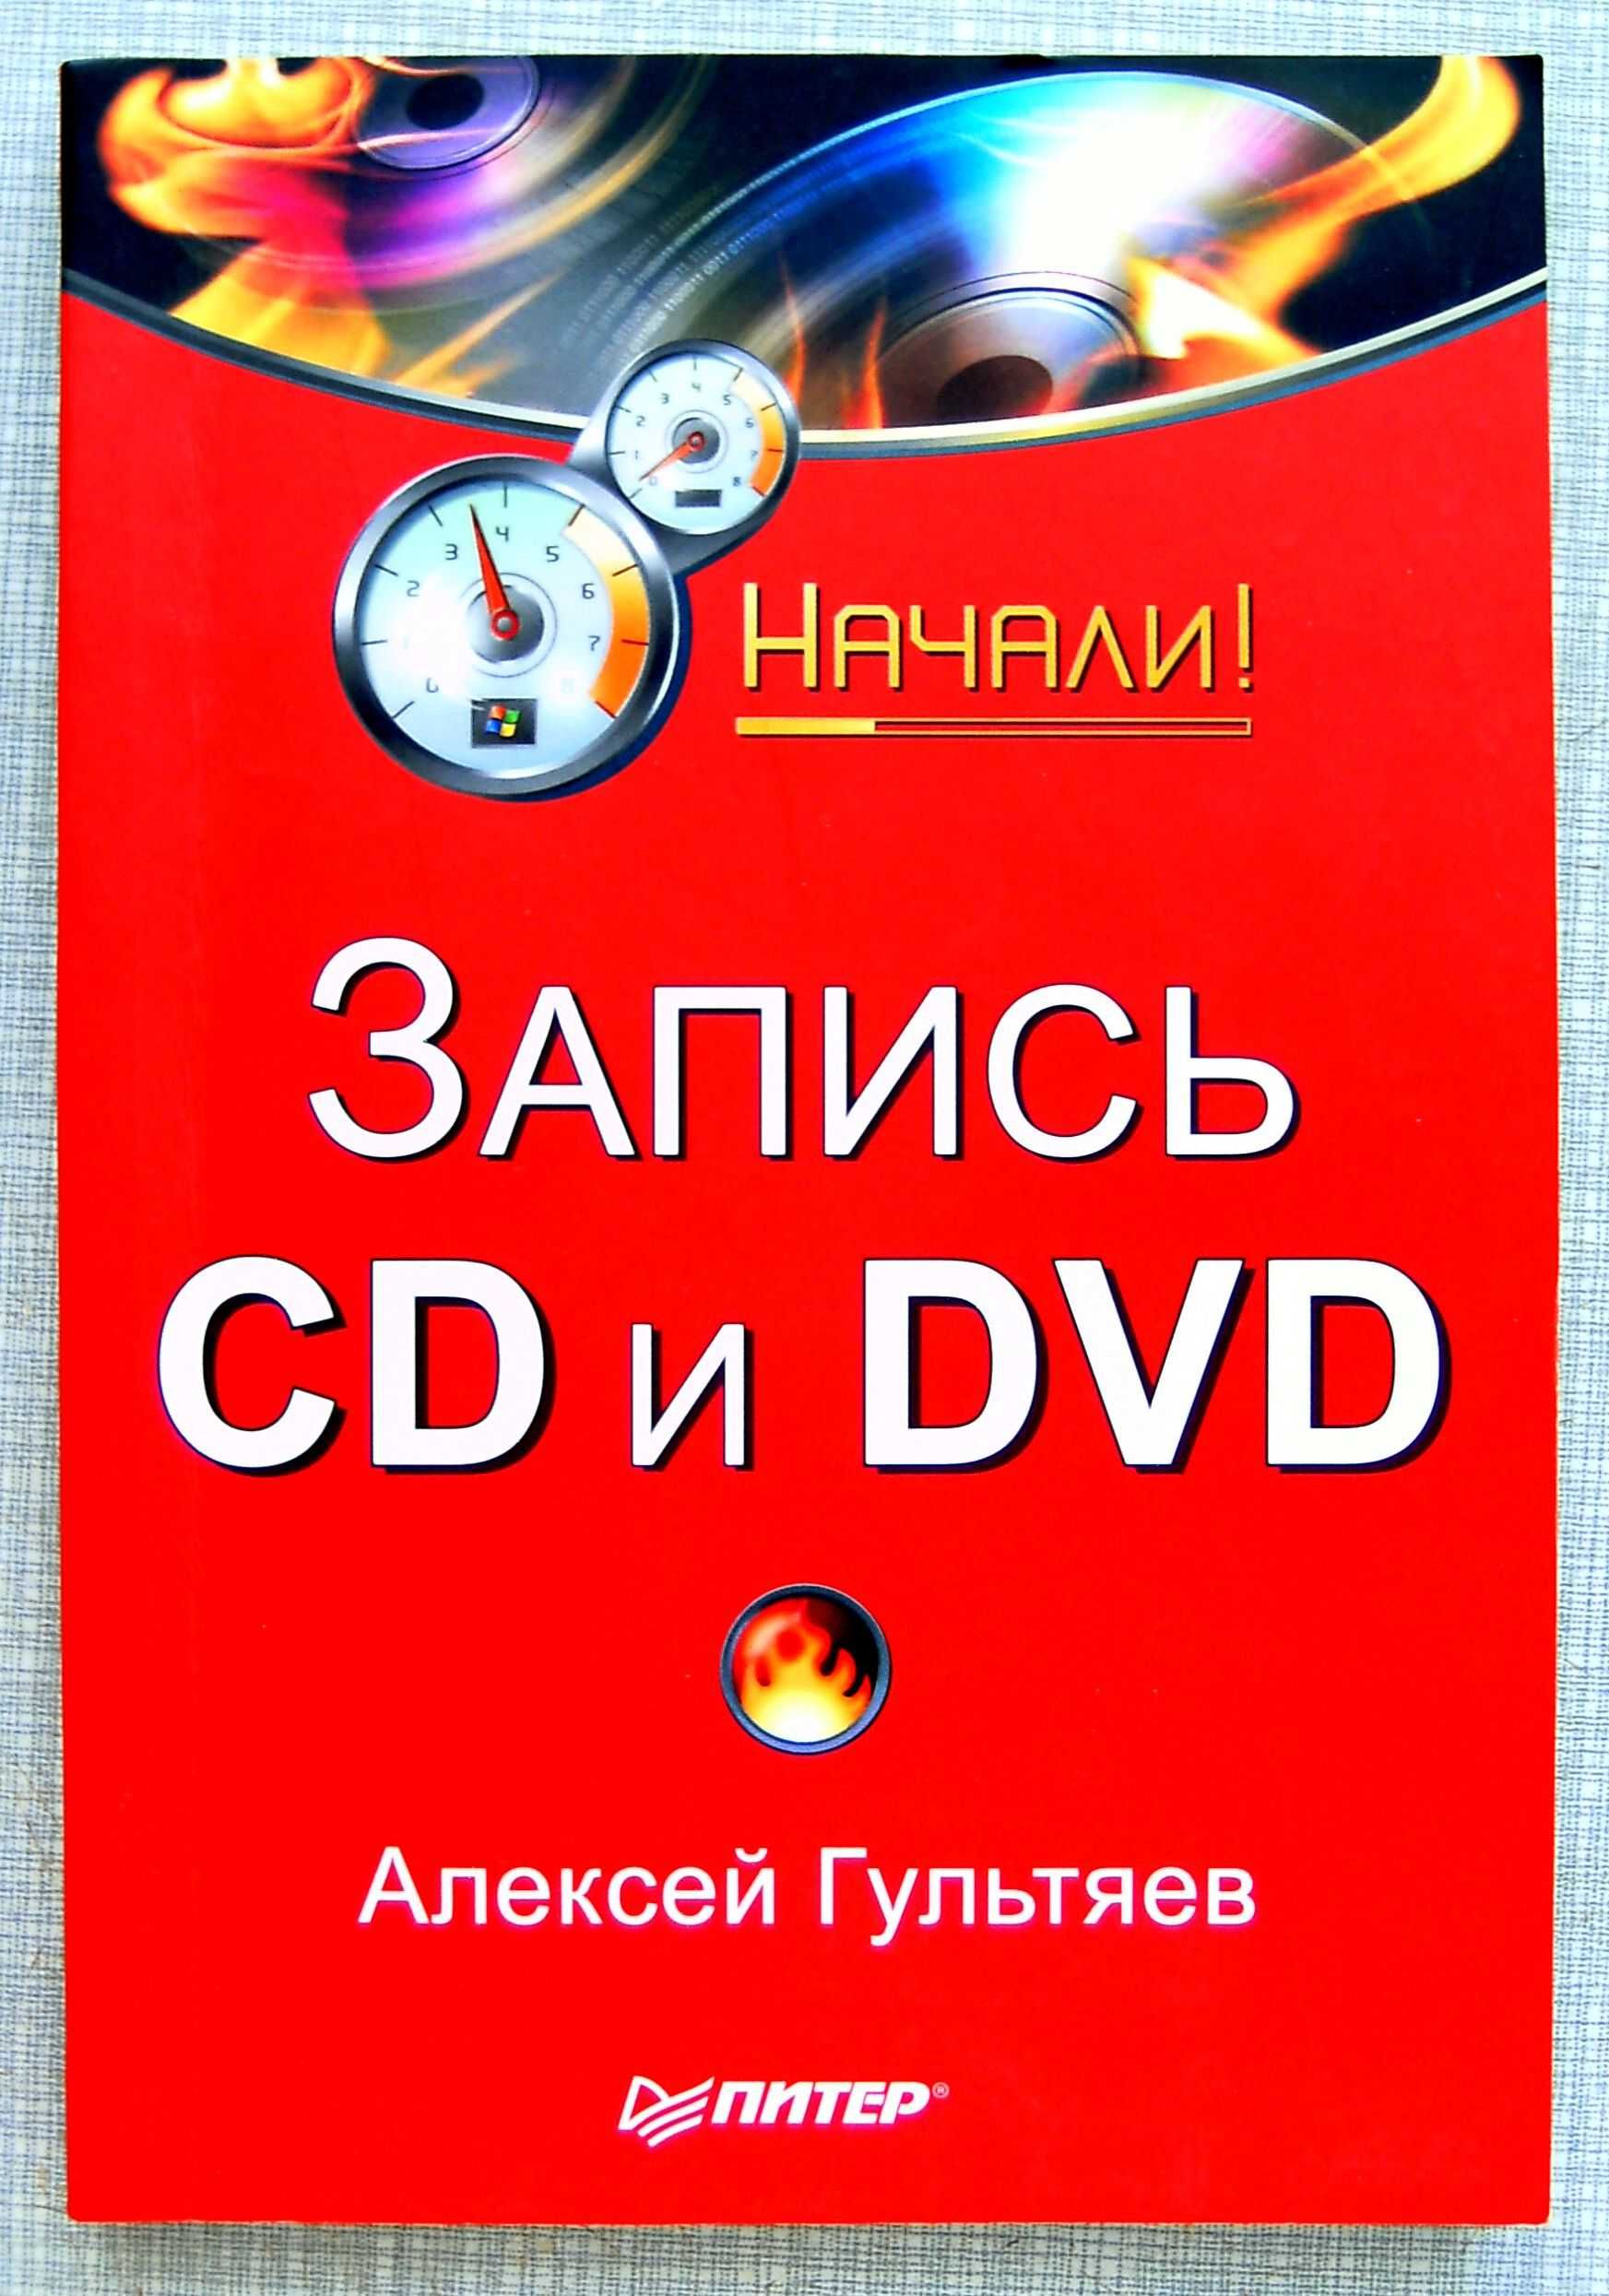 (Новый) А. Гультяев. Запись CD и DVD. Начали!